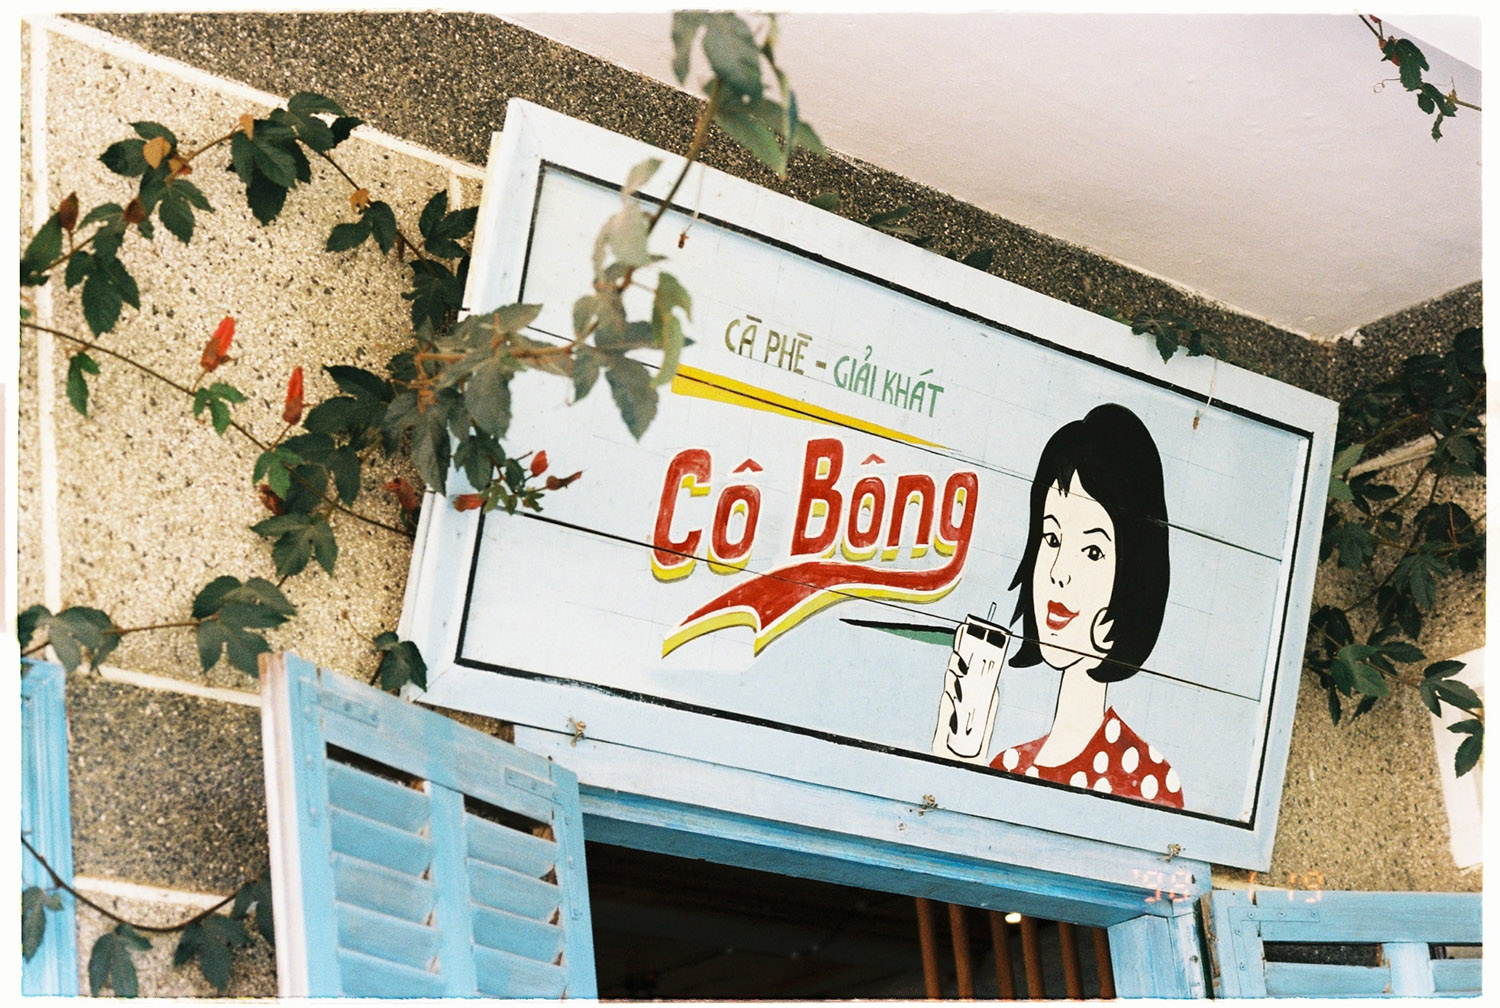 Ghé tiệm Cafe Cô Bông tìm về một nét hoài cổ giữa lòng thành phố 3